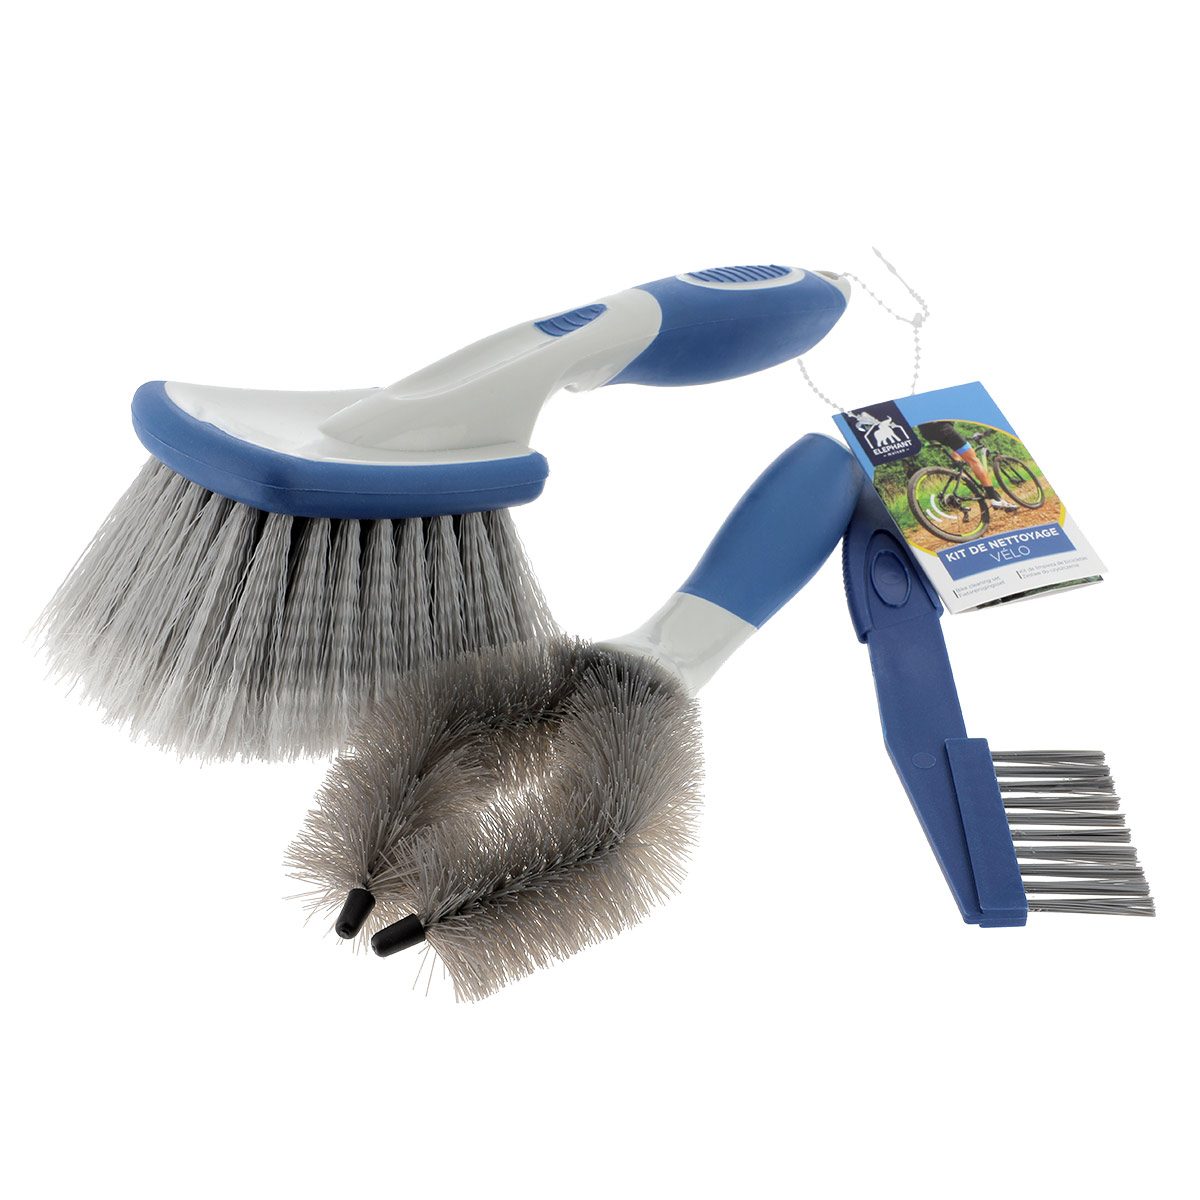 Nettoyage extérieur, Coup de brosse pour embellir sa maison